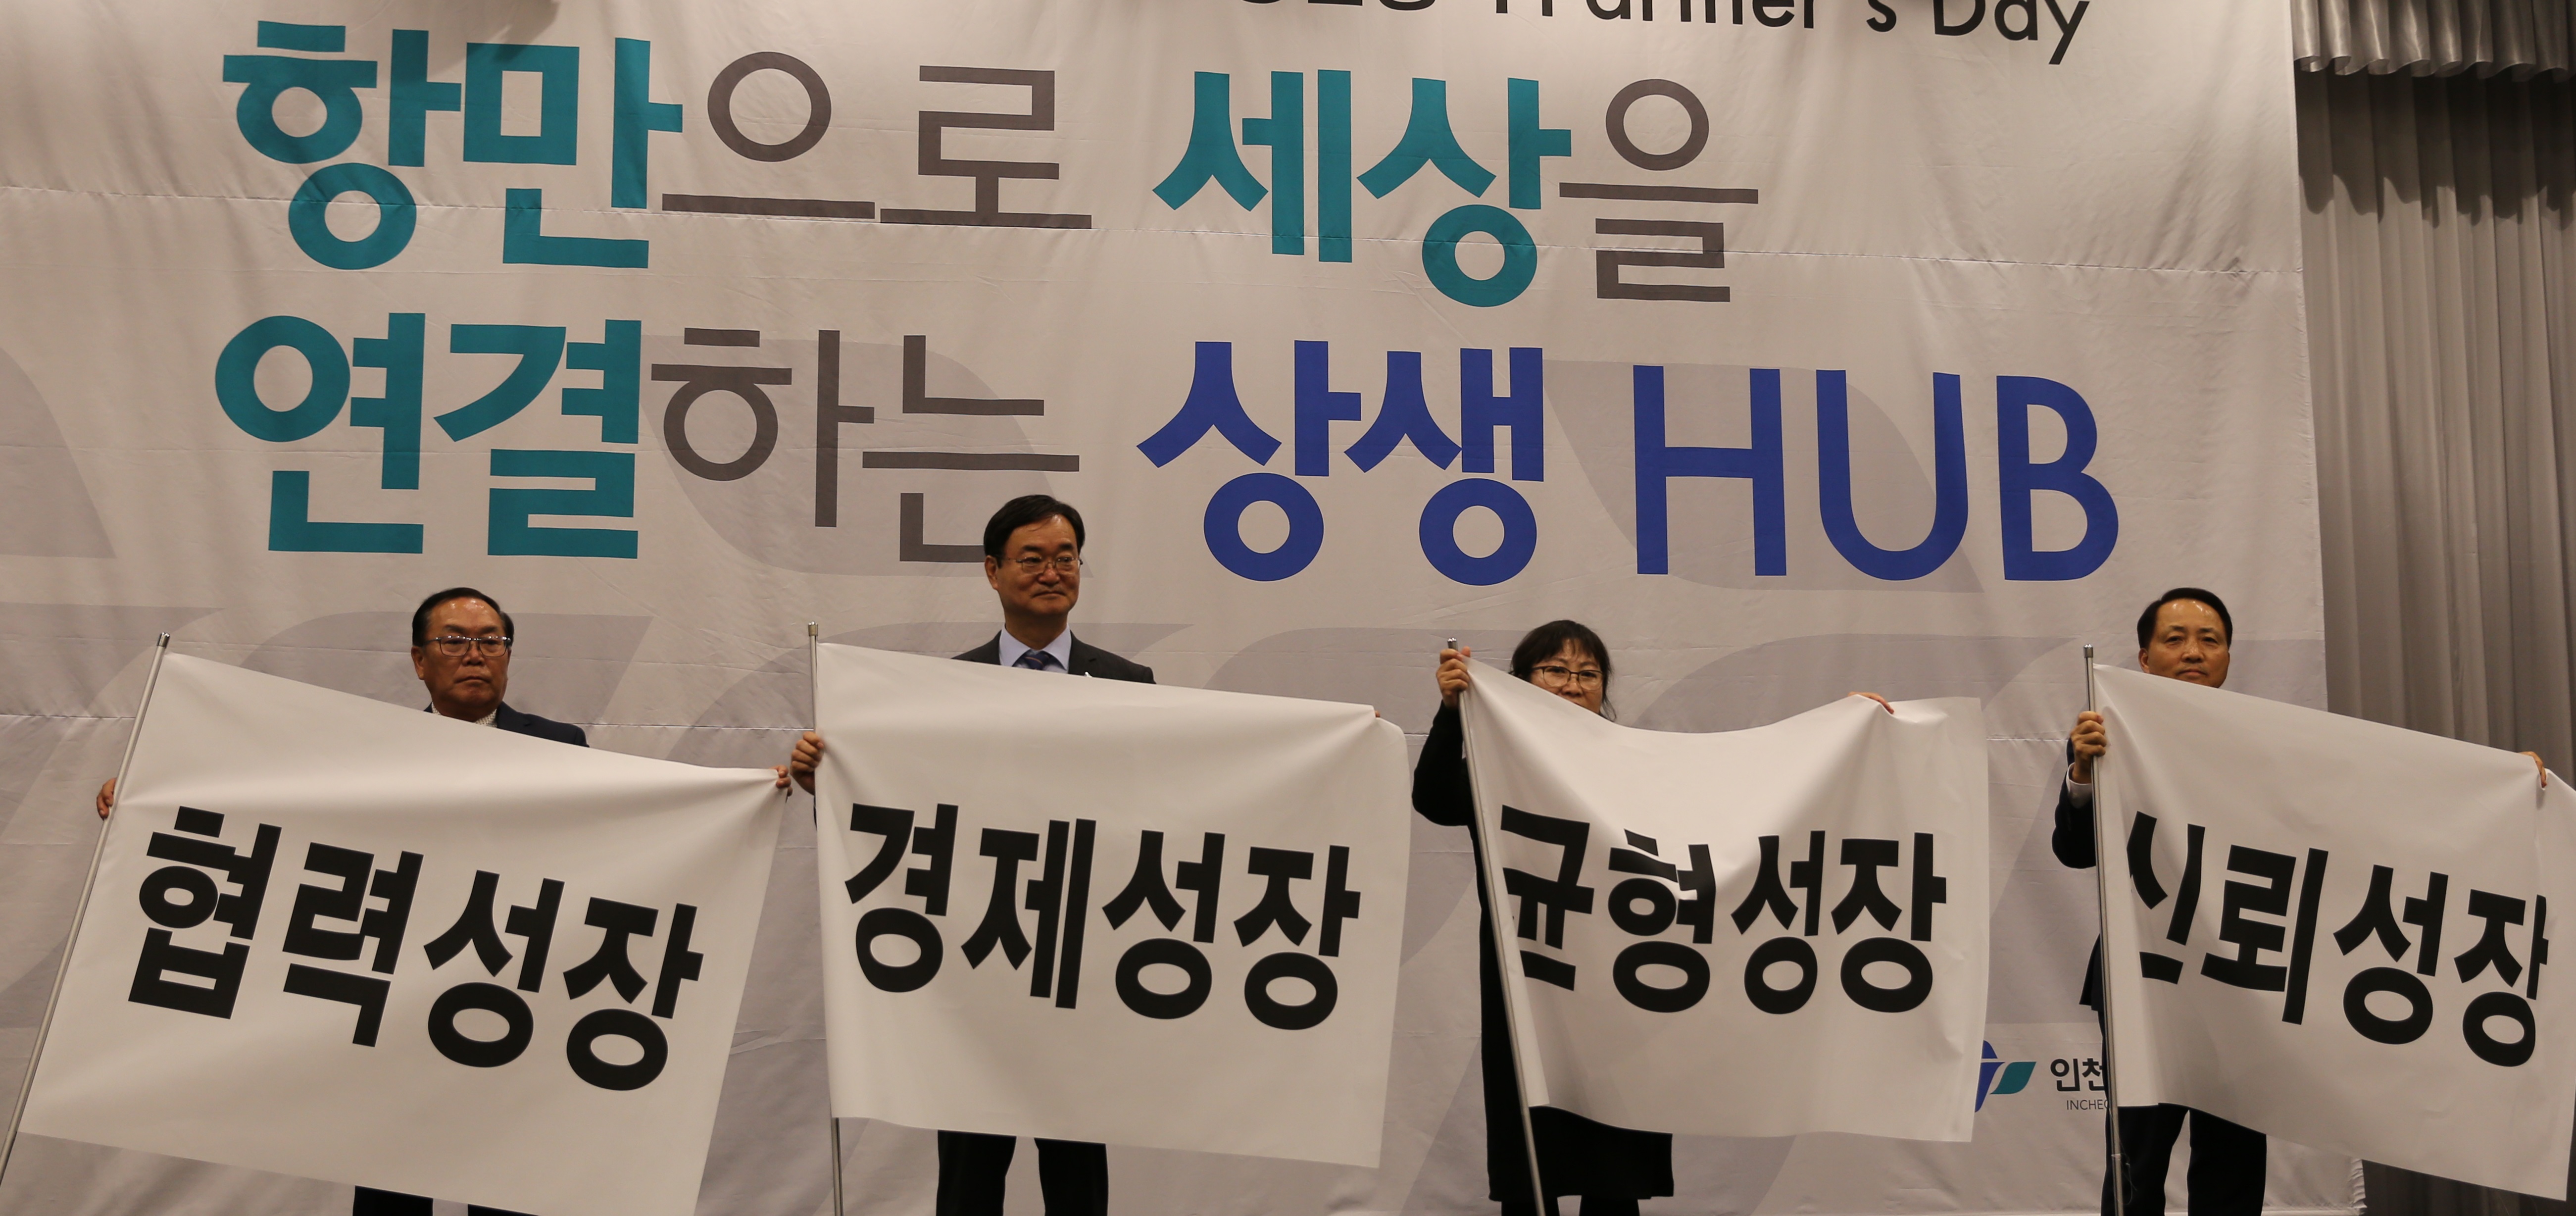 인천항만공사 남봉현 사장(왼쪽 두번째)과 사회적 경제 조직 대표 및 협력기업 대표가 4대 성장전략목표를 적은 깃발을 펼쳐들고 있다